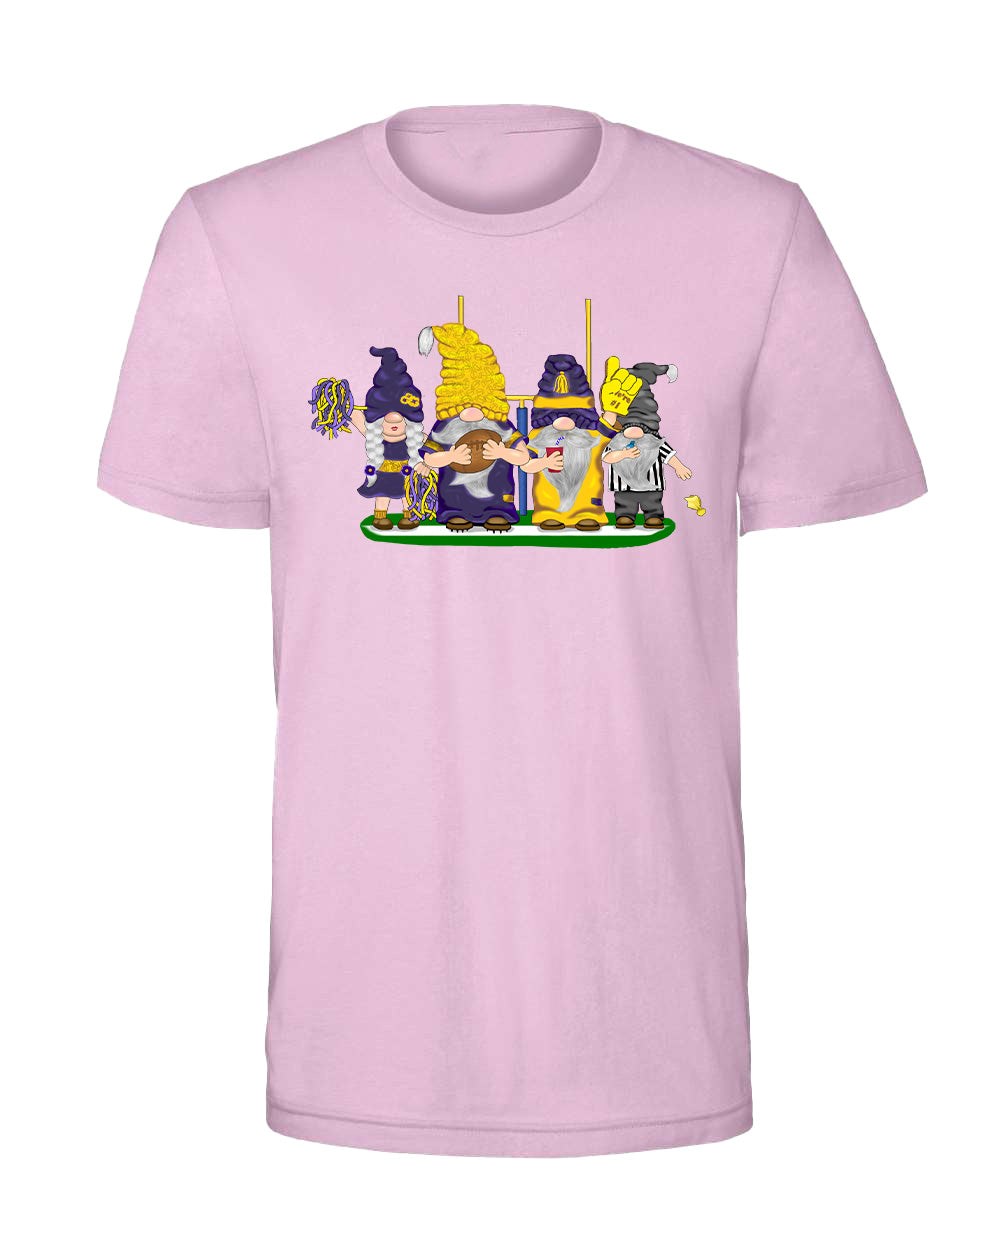 Purple & Gold Football Gnomes on Men's T-shirt (similar to Minnesota)